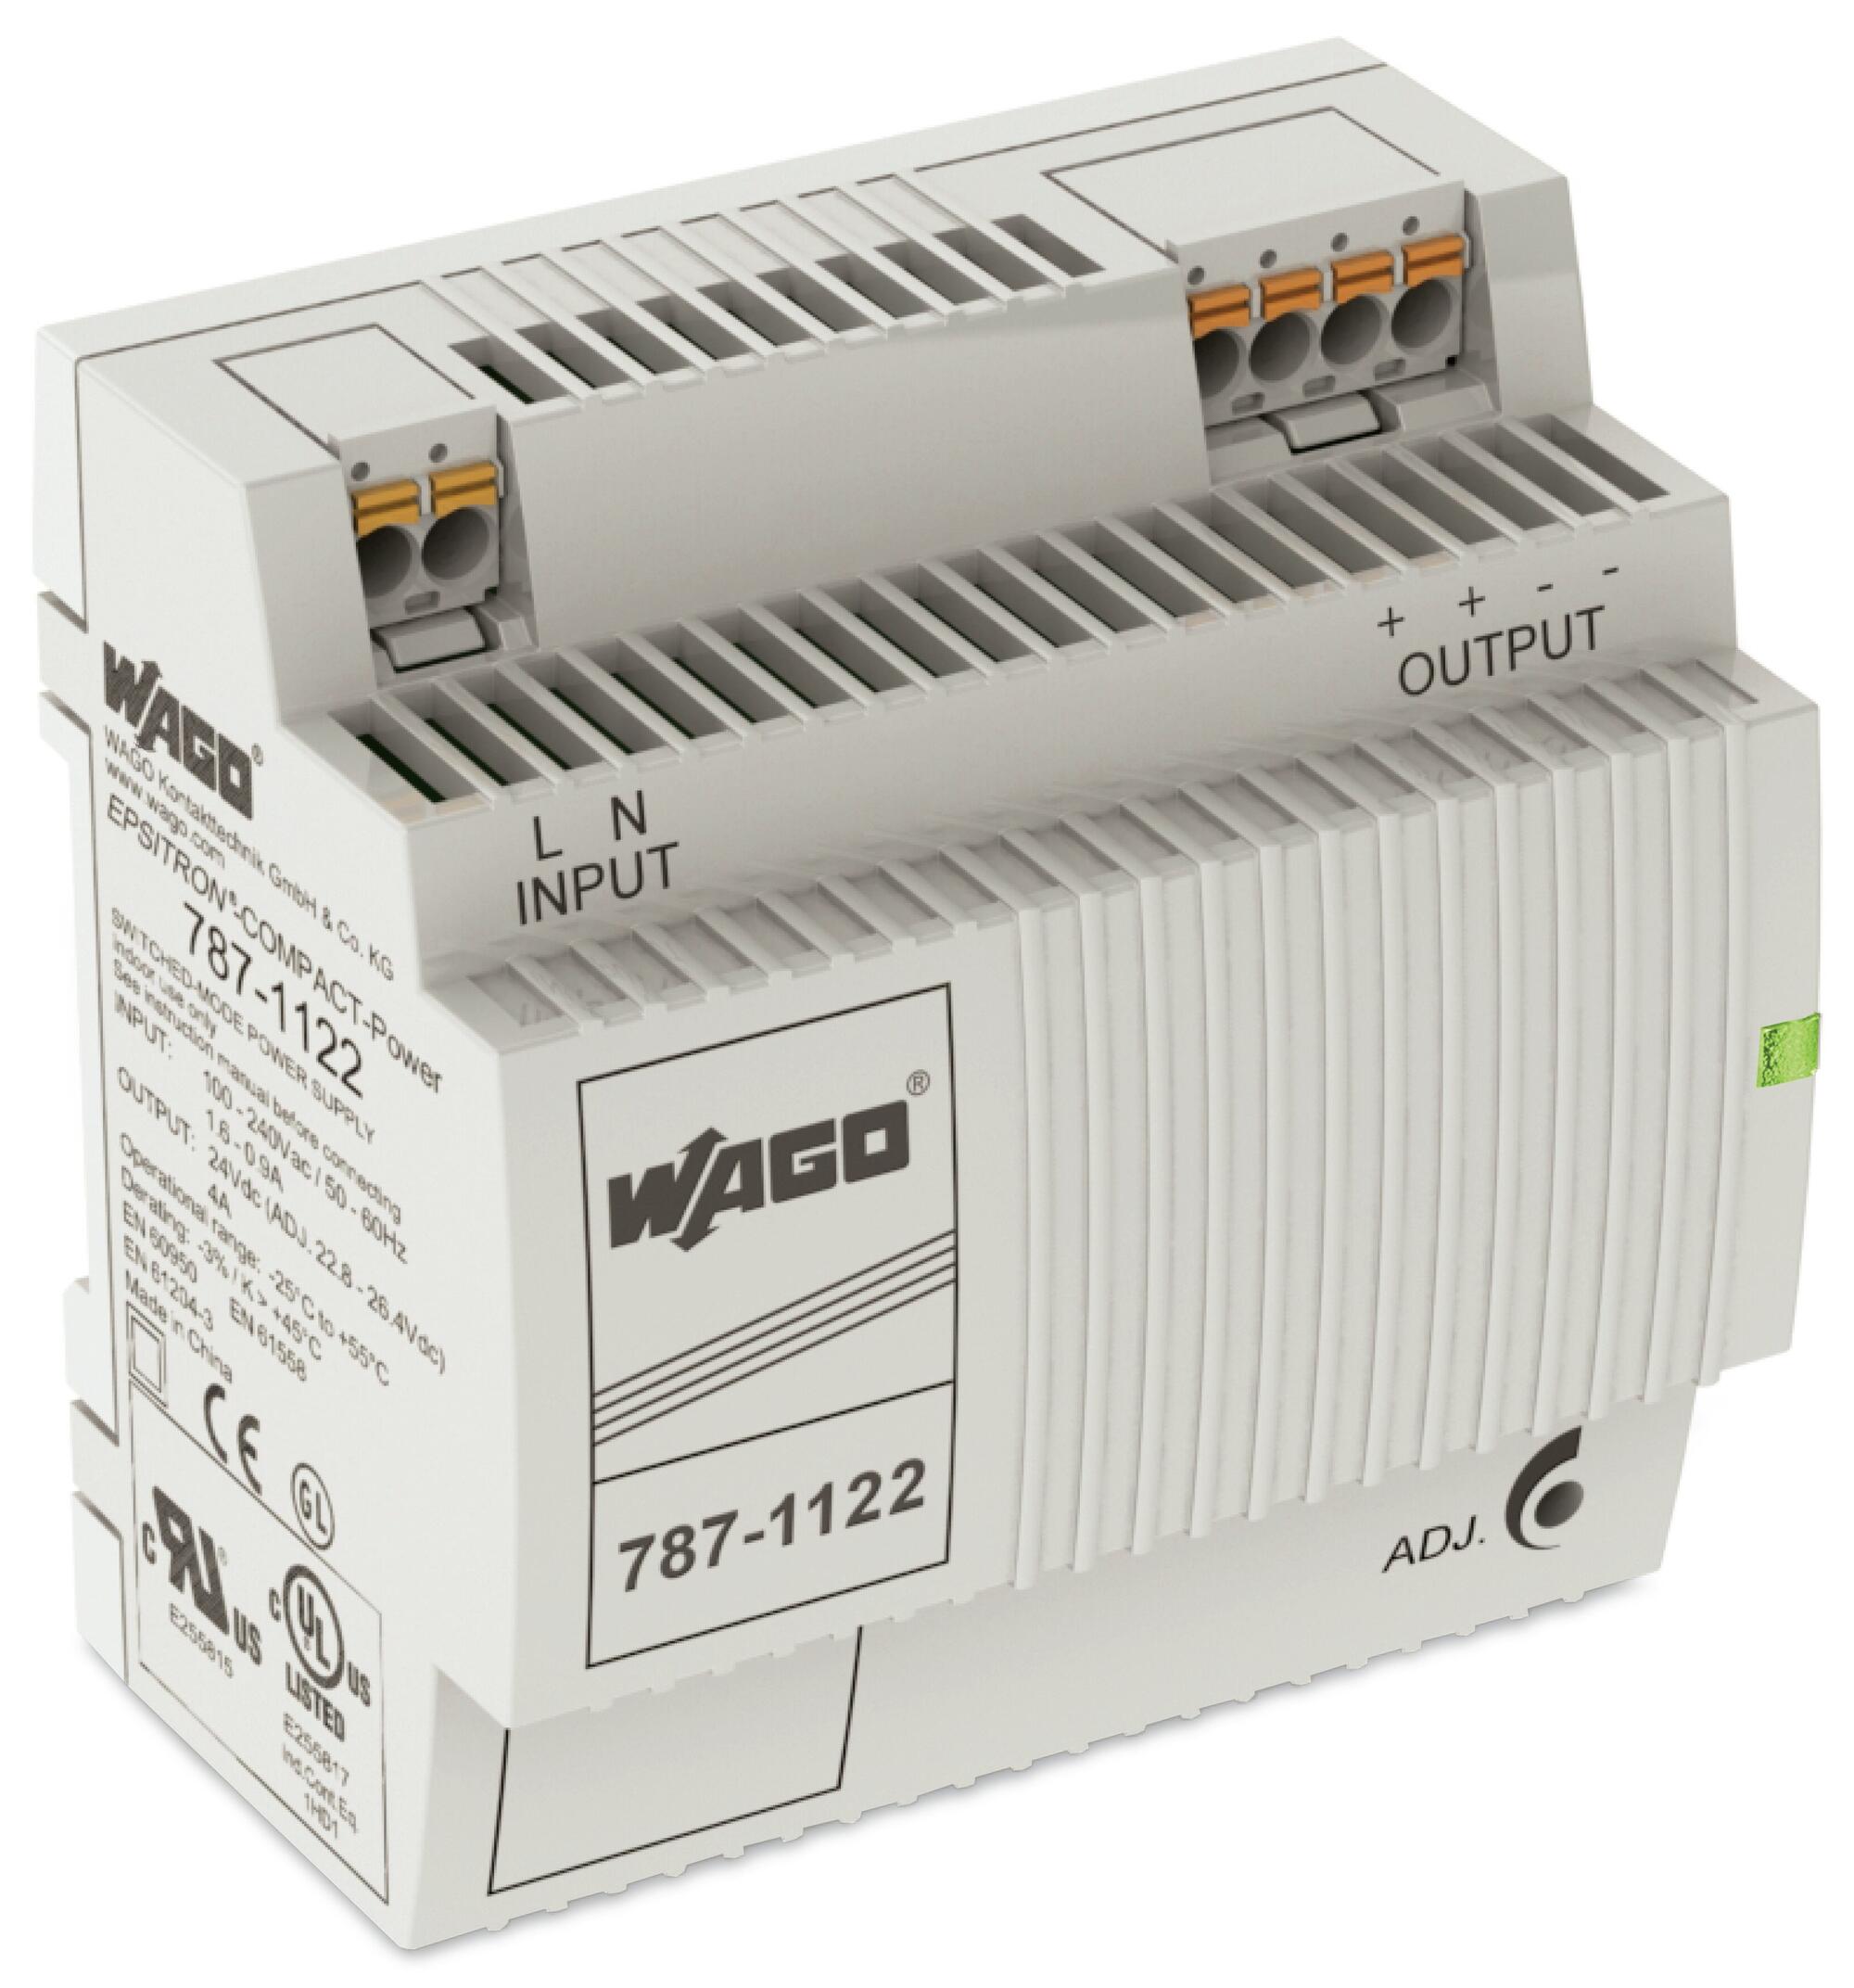 开关稳压电源; COMPACT紧凑型电源; 单相; 24 VDC输出电压; 4 A输出电流; DC-OK LED